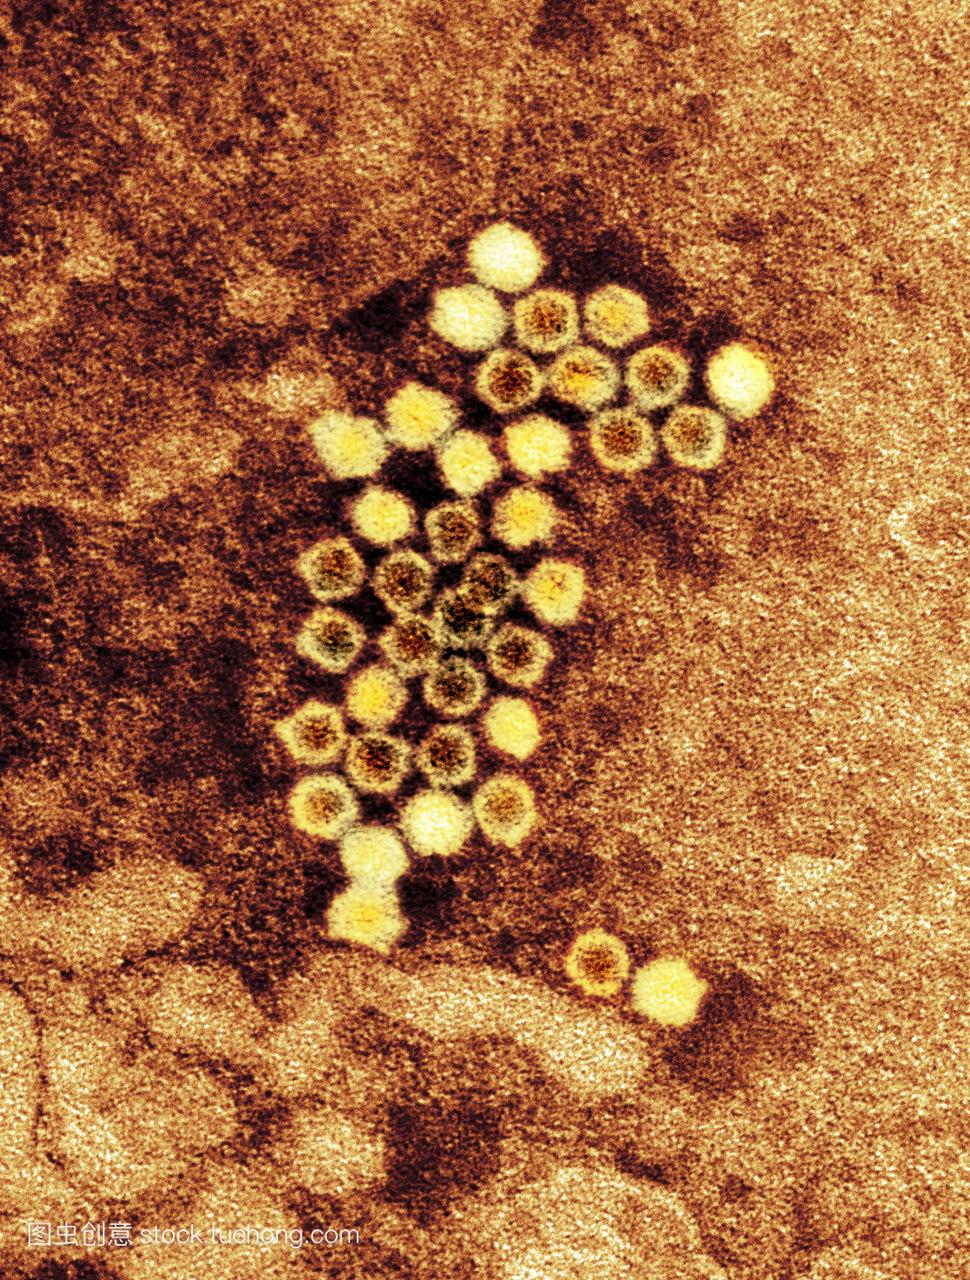 人类bocavirus粒子,彩色透射电子显微图tem。